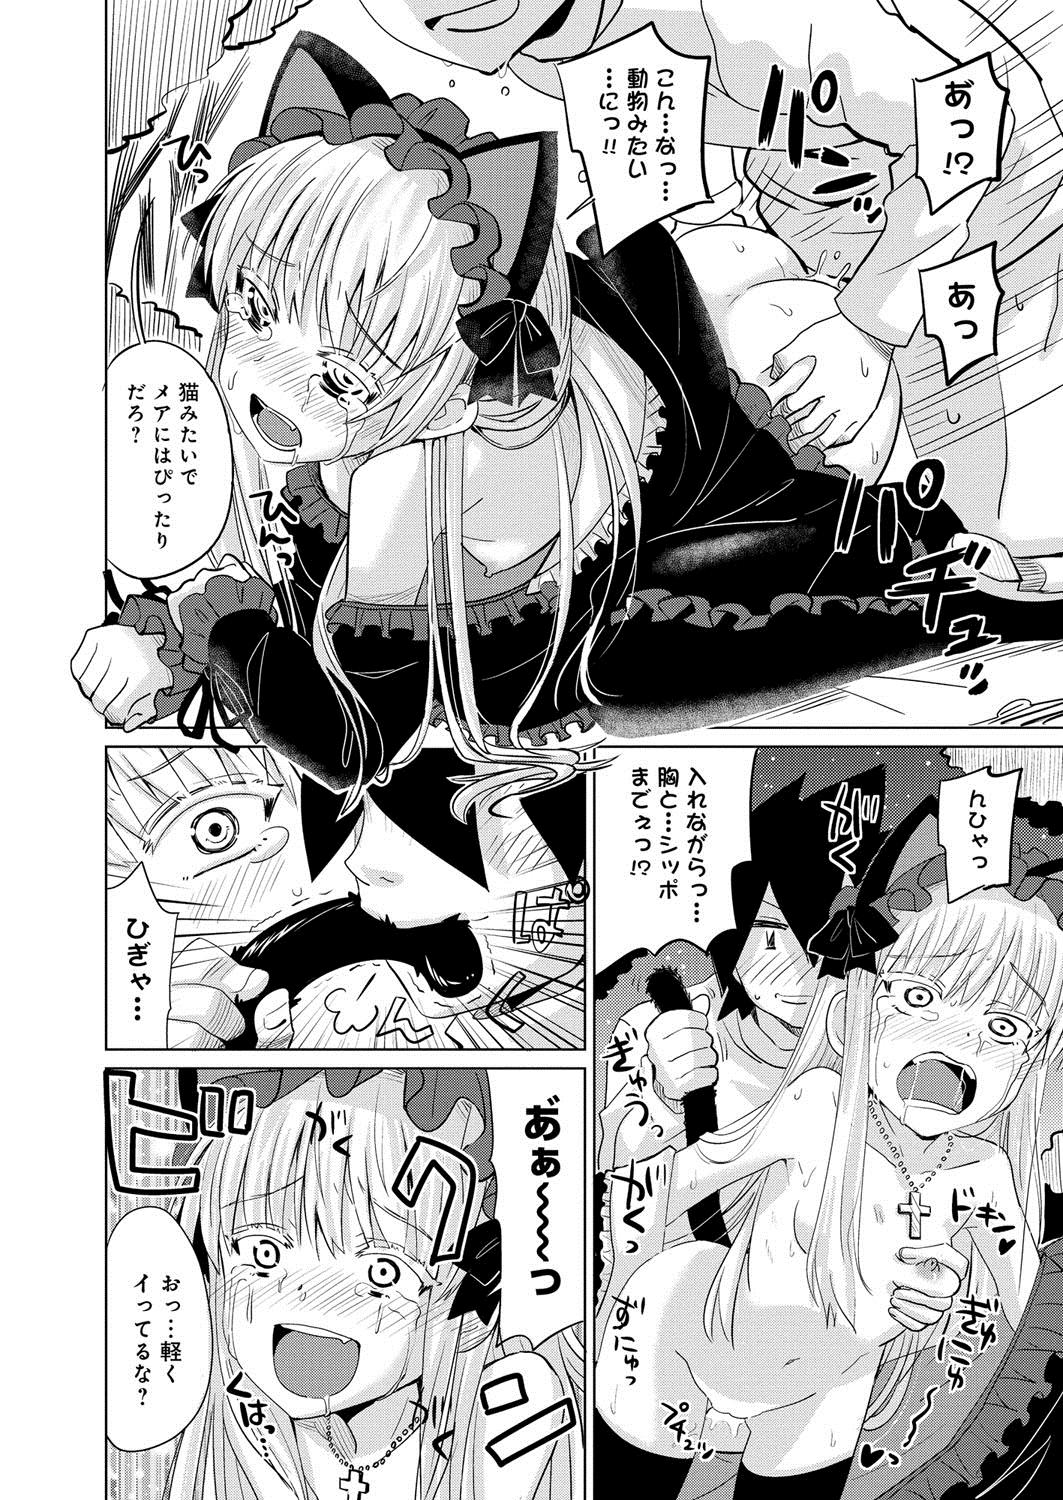 [Anthology] Lord of Valkyrie Adult - Comic Anthology R18 Handakara Saigomade... Mou, Kishi-sama no Ecchi♪ 81